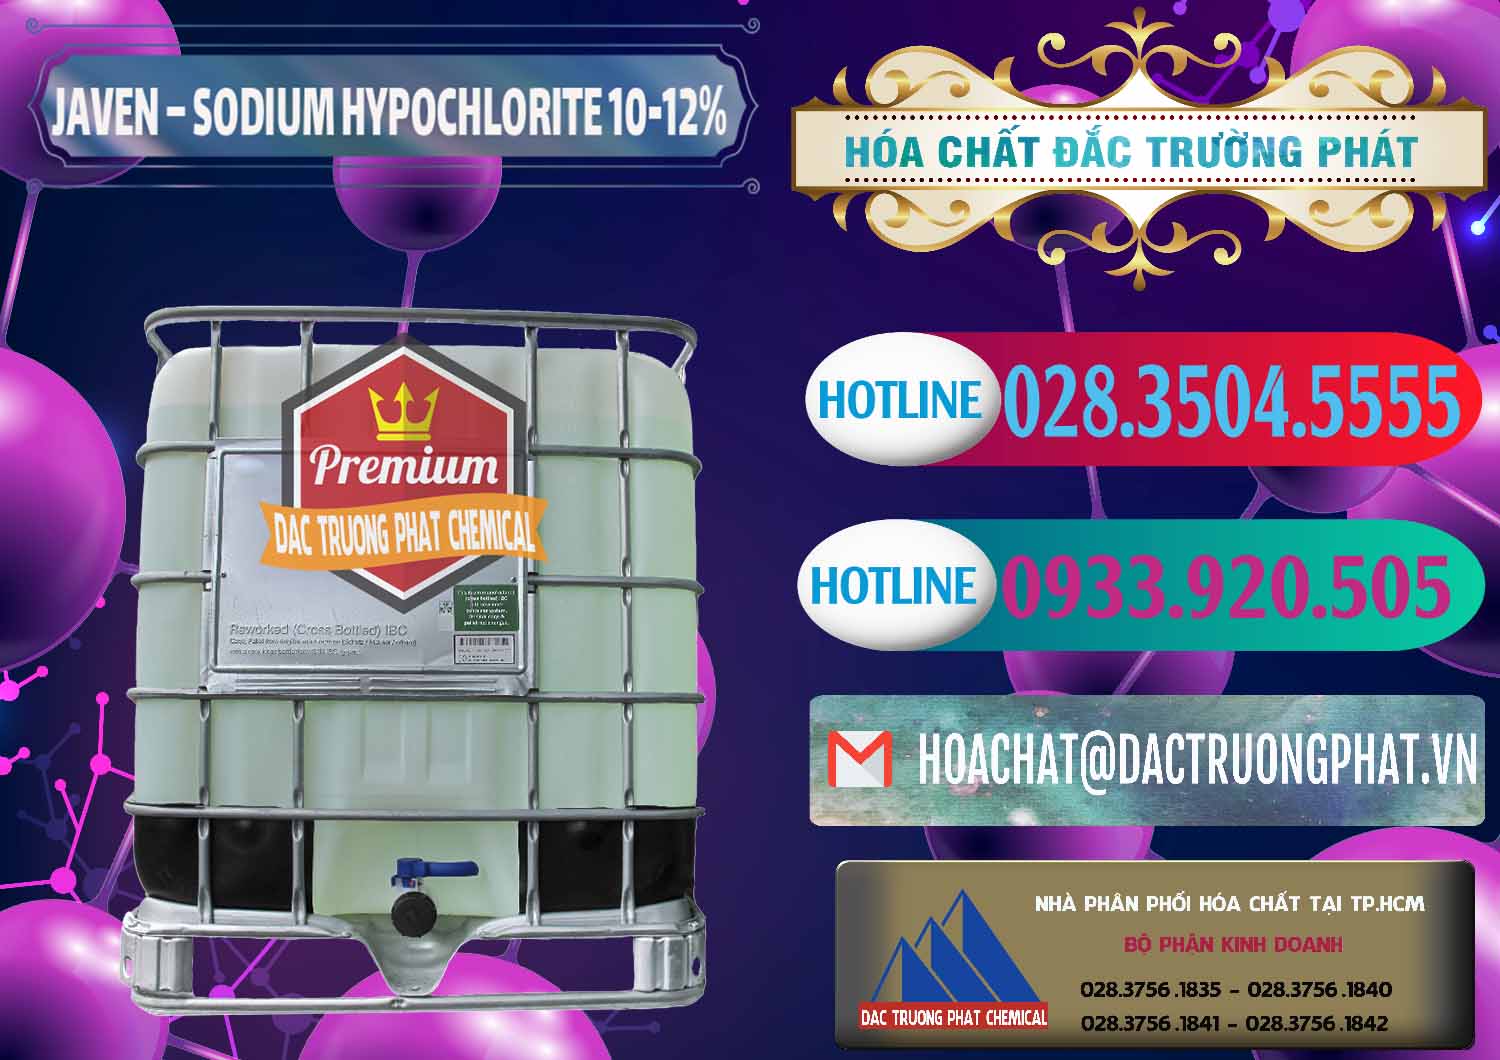 Cty chuyên cung ứng - bán Javen - Sodium Hypochlorite 10-12% Việt Nam - 0188 - Nơi phân phối _ kinh doanh hóa chất tại TP.HCM - truongphat.vn